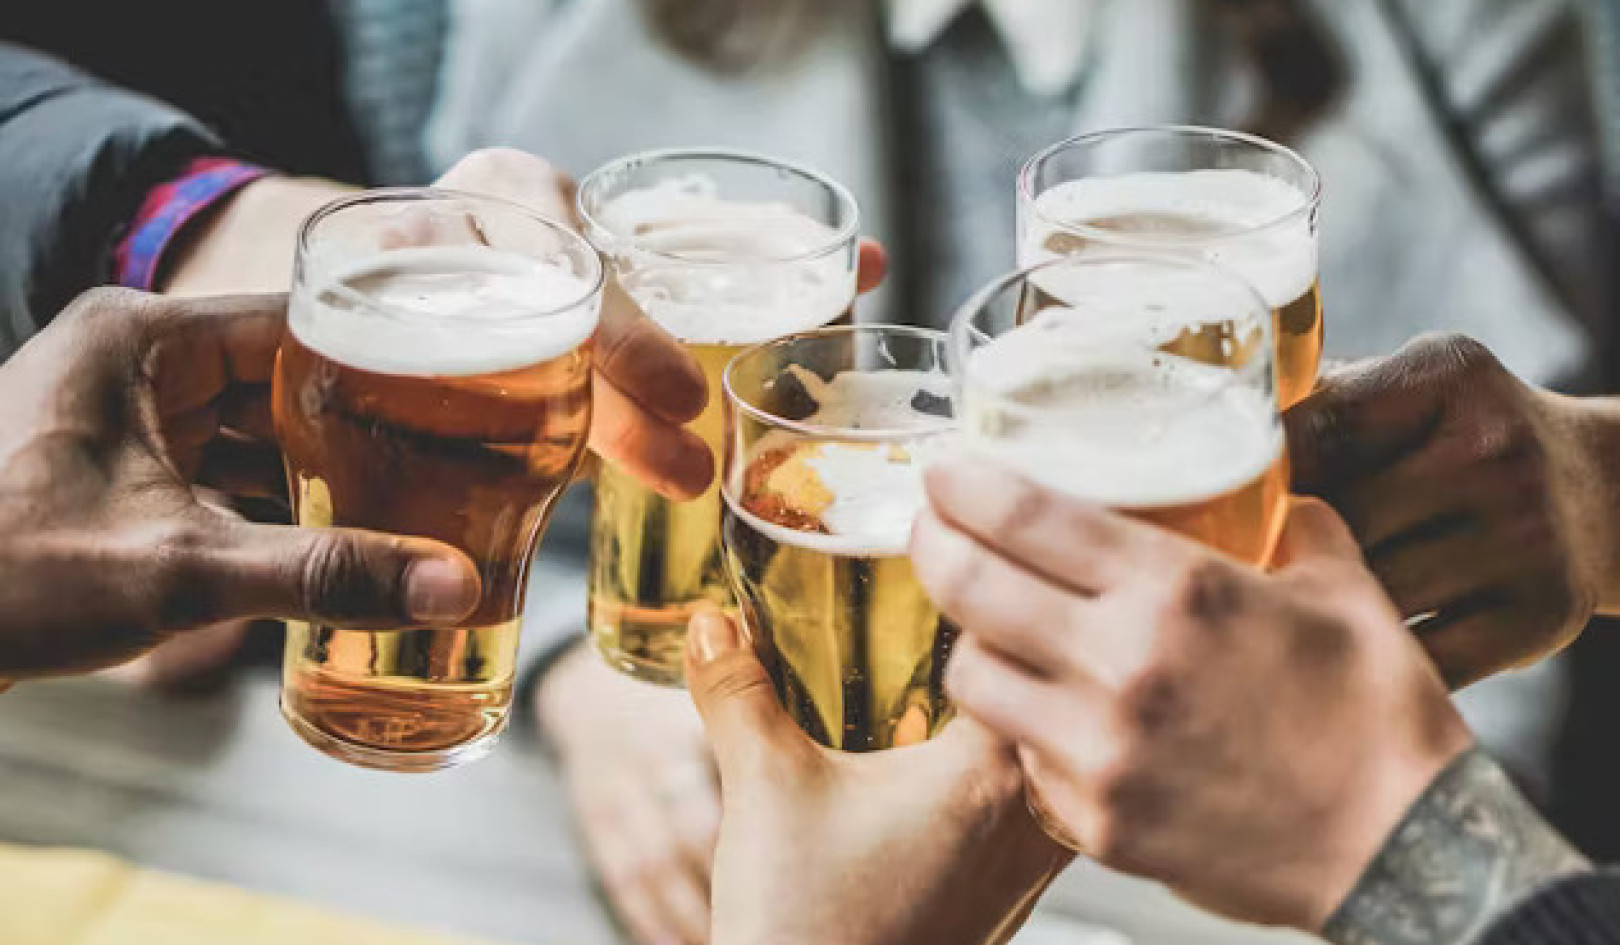 Beber moderadamente é realmente saudável? Descobrindo os fatos